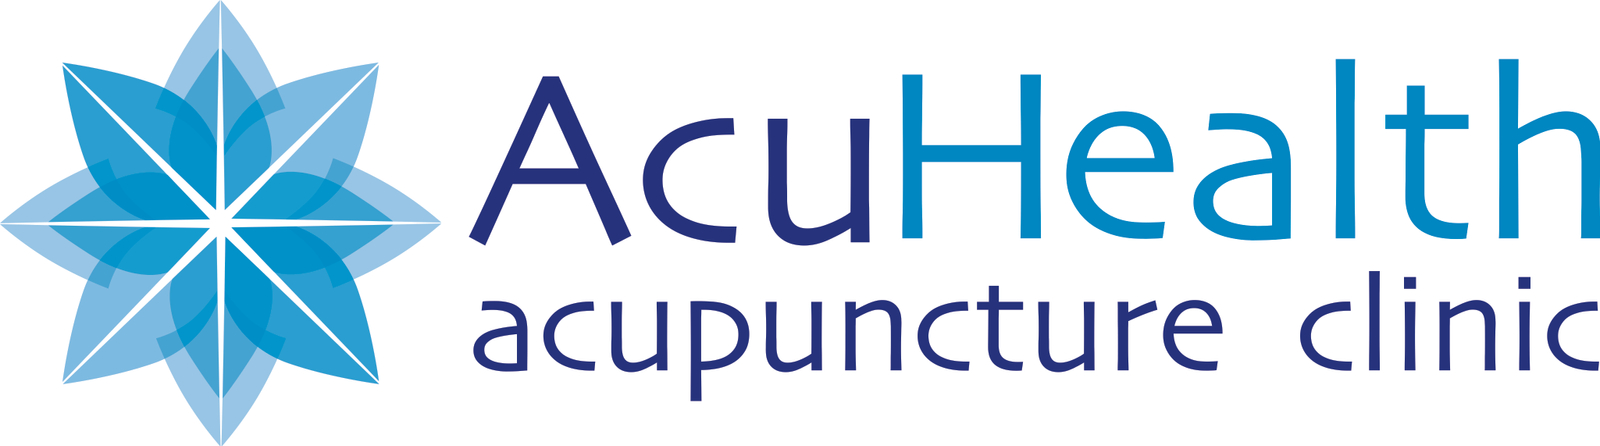 Acuhealth Acupuncture